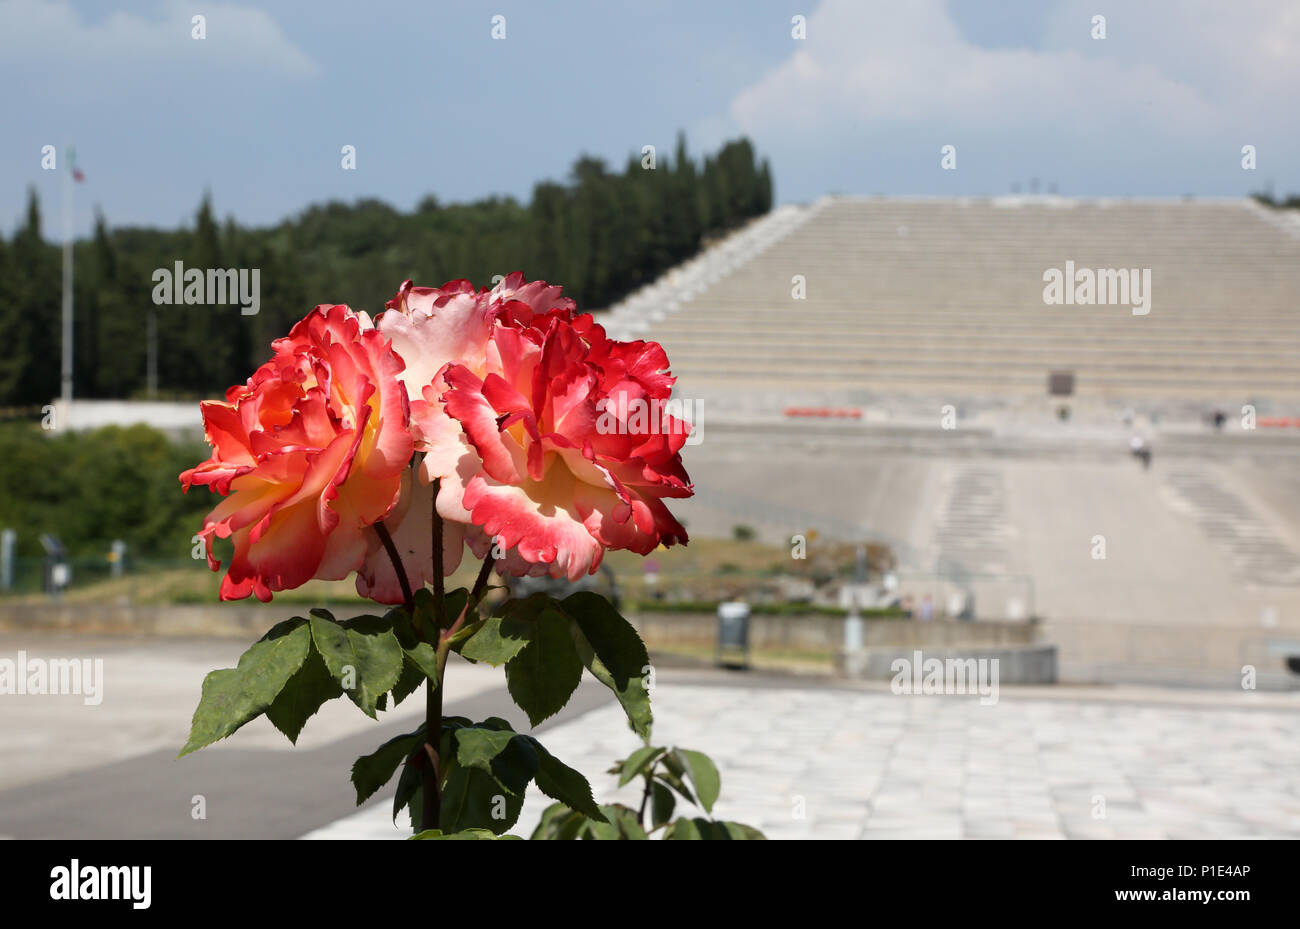 Redipuglia, rendez-vous, de l'Italie - le 3 juin 2017 : Roses rouges et l'Redipuglia War Memorial est un ossuaire militaire de la Première Guerre mondiale, également appelé Sacrario di Redipuglia j Banque D'Images